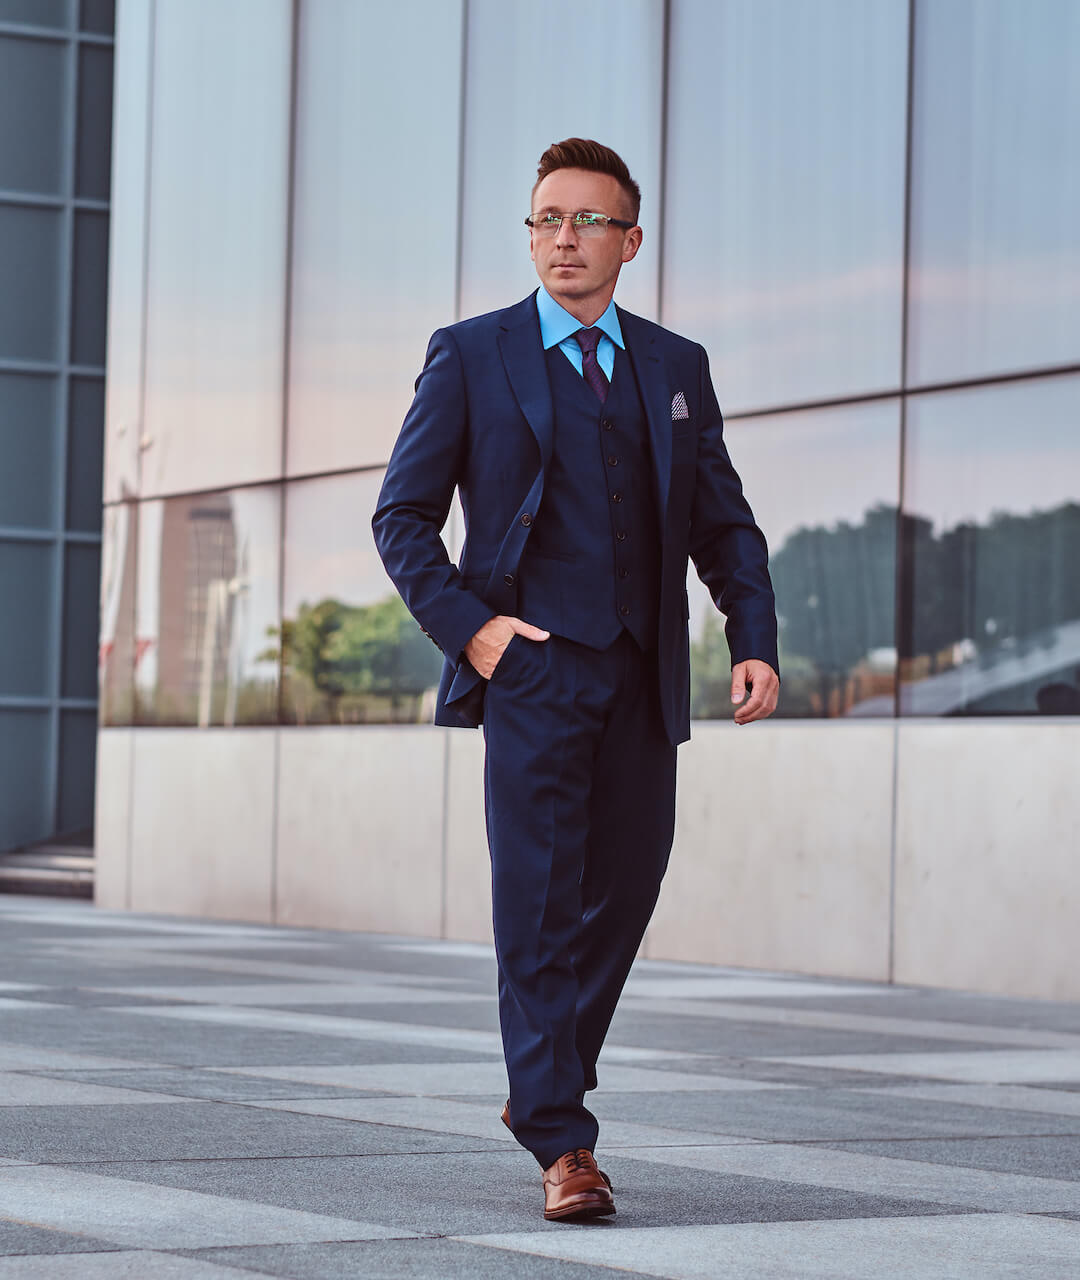 confident-businessman-dressed-in-an-elegant-suit-s-2021-08-28-09-03-39-utc.jpg